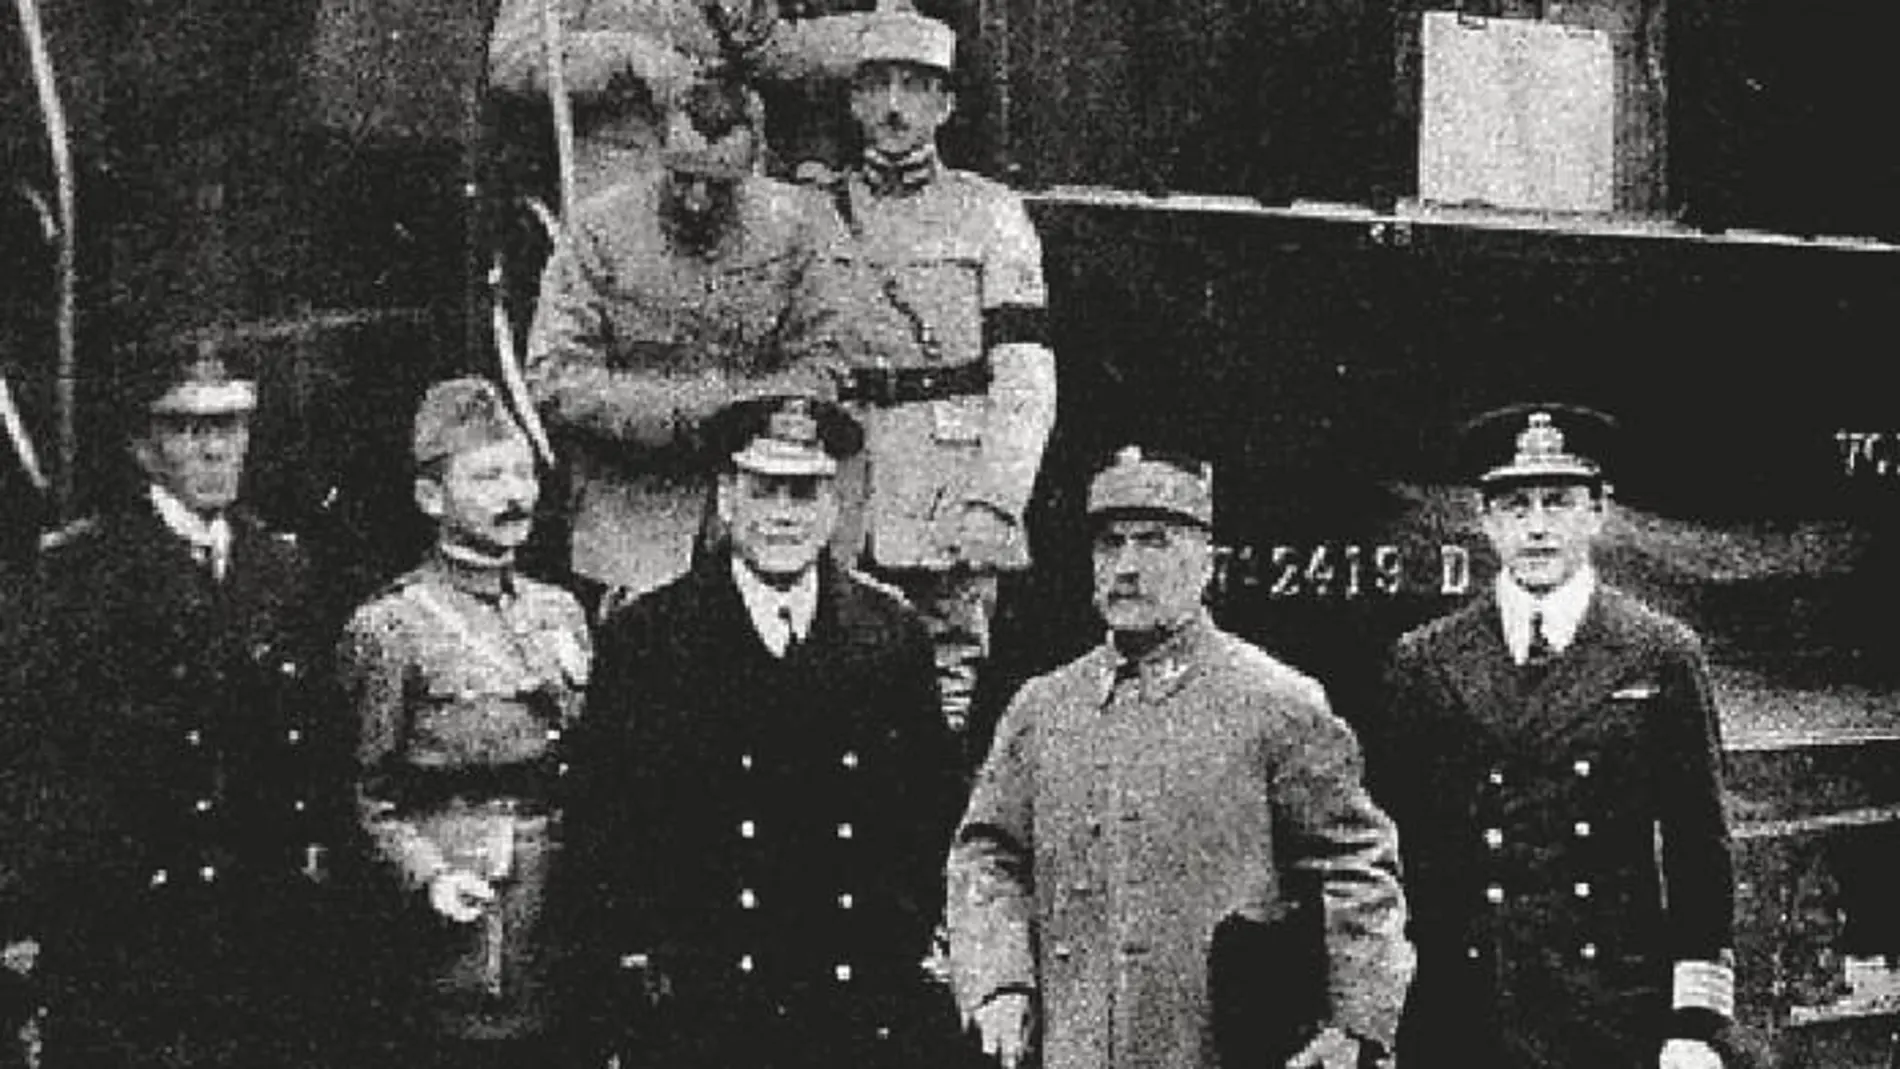 El vagón del armisticio, que fue firmado por el mariscal francés Ferdinand Foch y el ministro de Estado alemán Matthias Erzberger, en la imagen